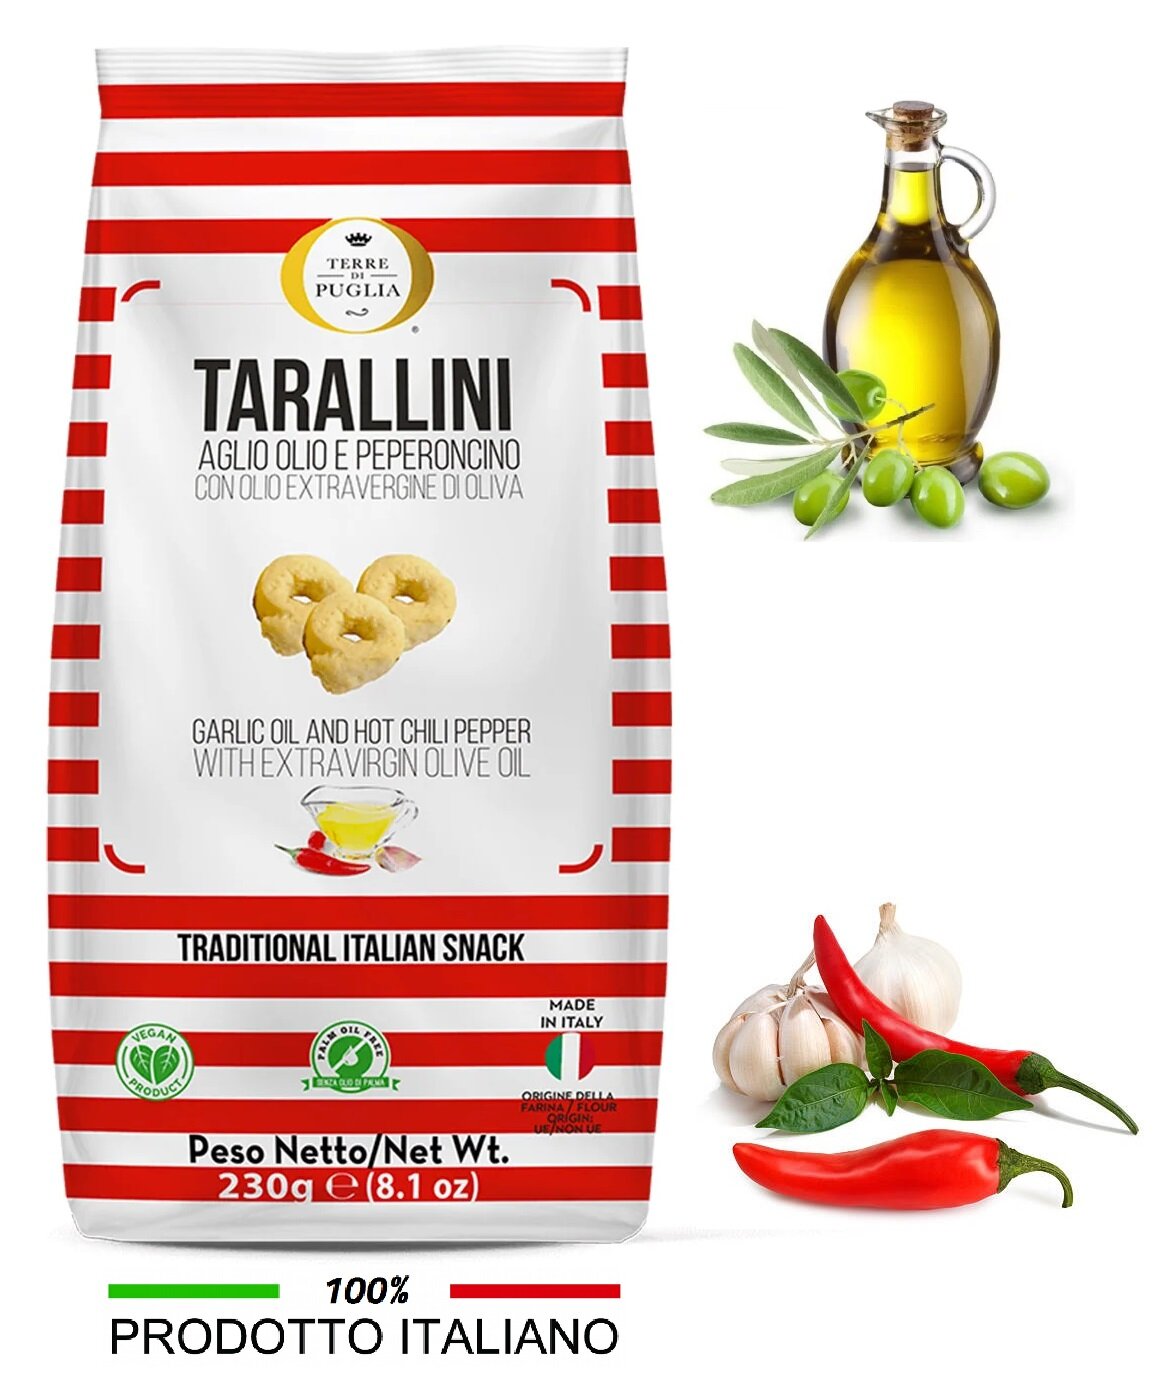 Тараллини Terra di Puglia с оливковым маслом экстраверджине и перерончино, Италия 230г - фотография № 1